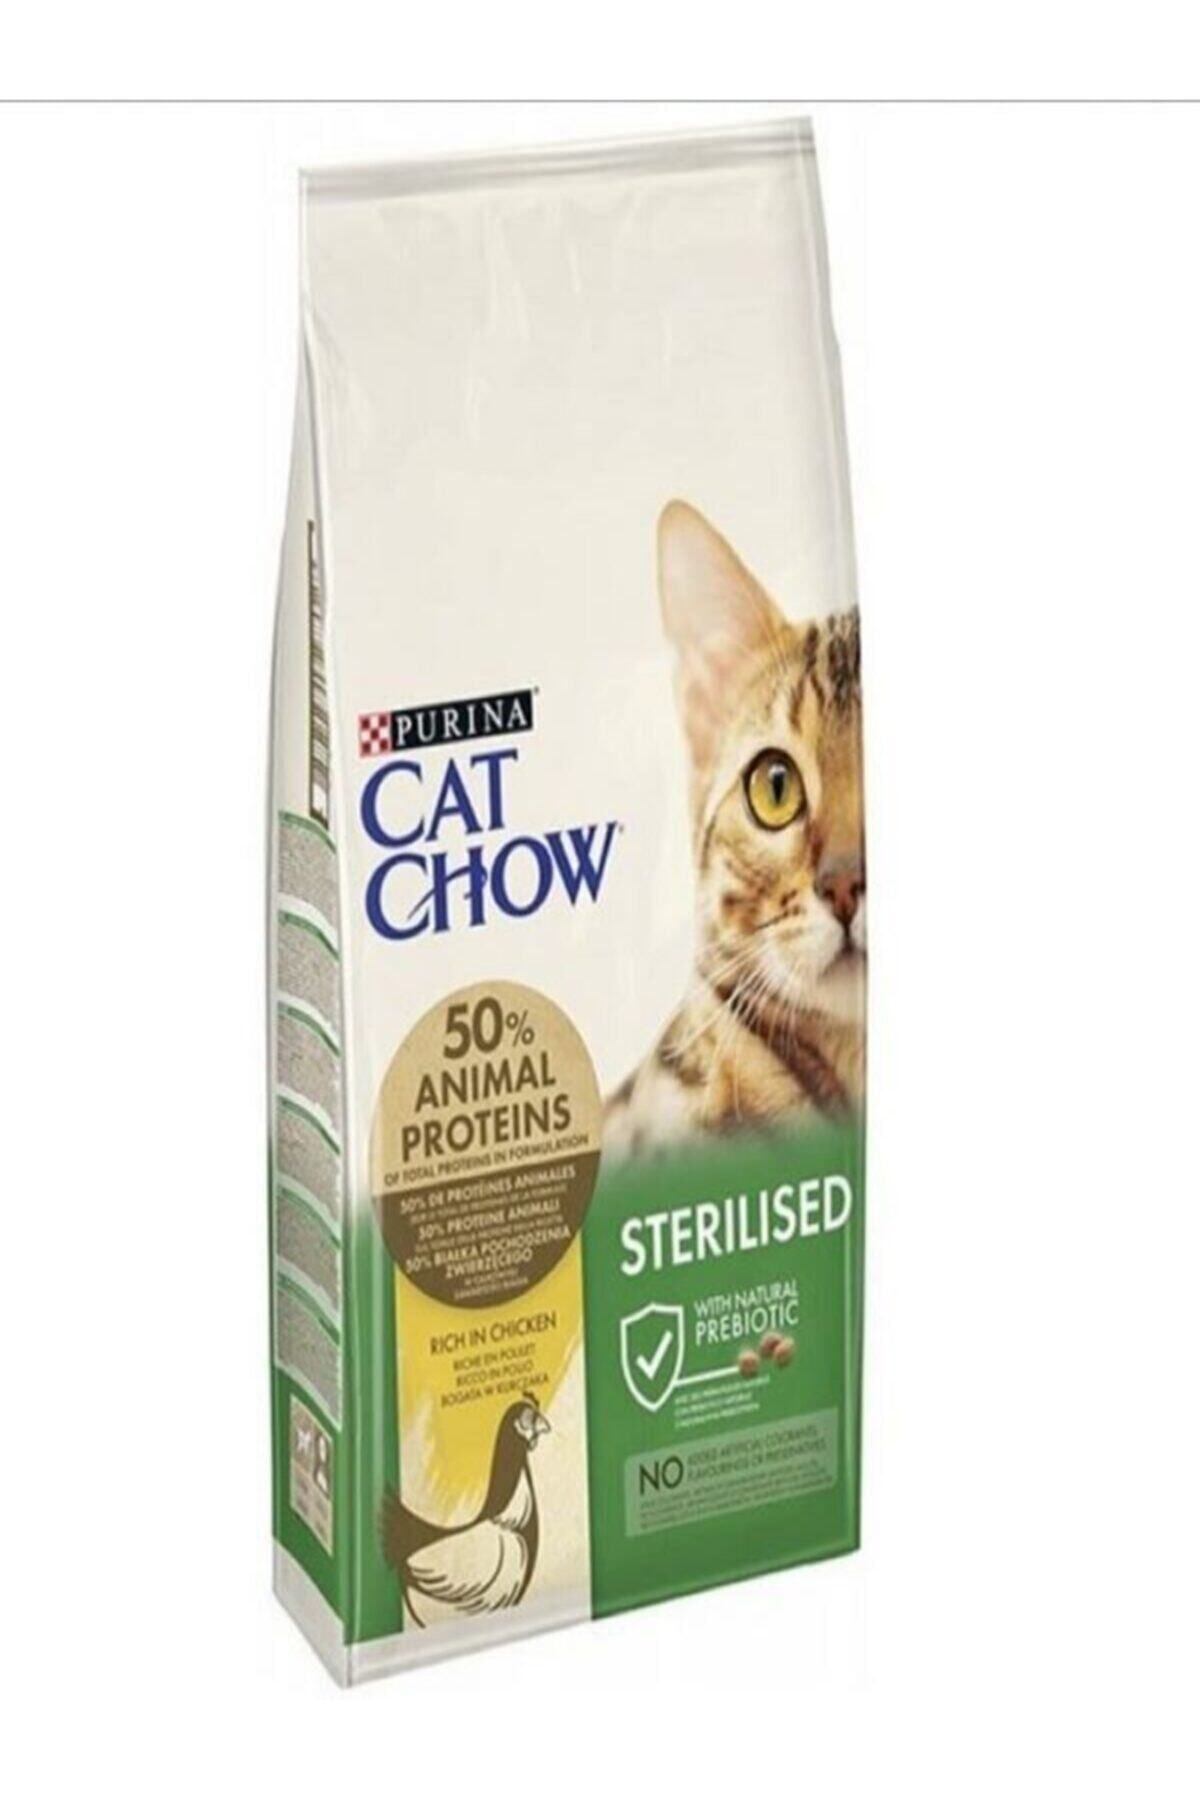 Cat Chow Purına Sterılısed Kısırlaştırılmış Tavuklu Yetişkin Kuru Kedi Maması 15 Kg